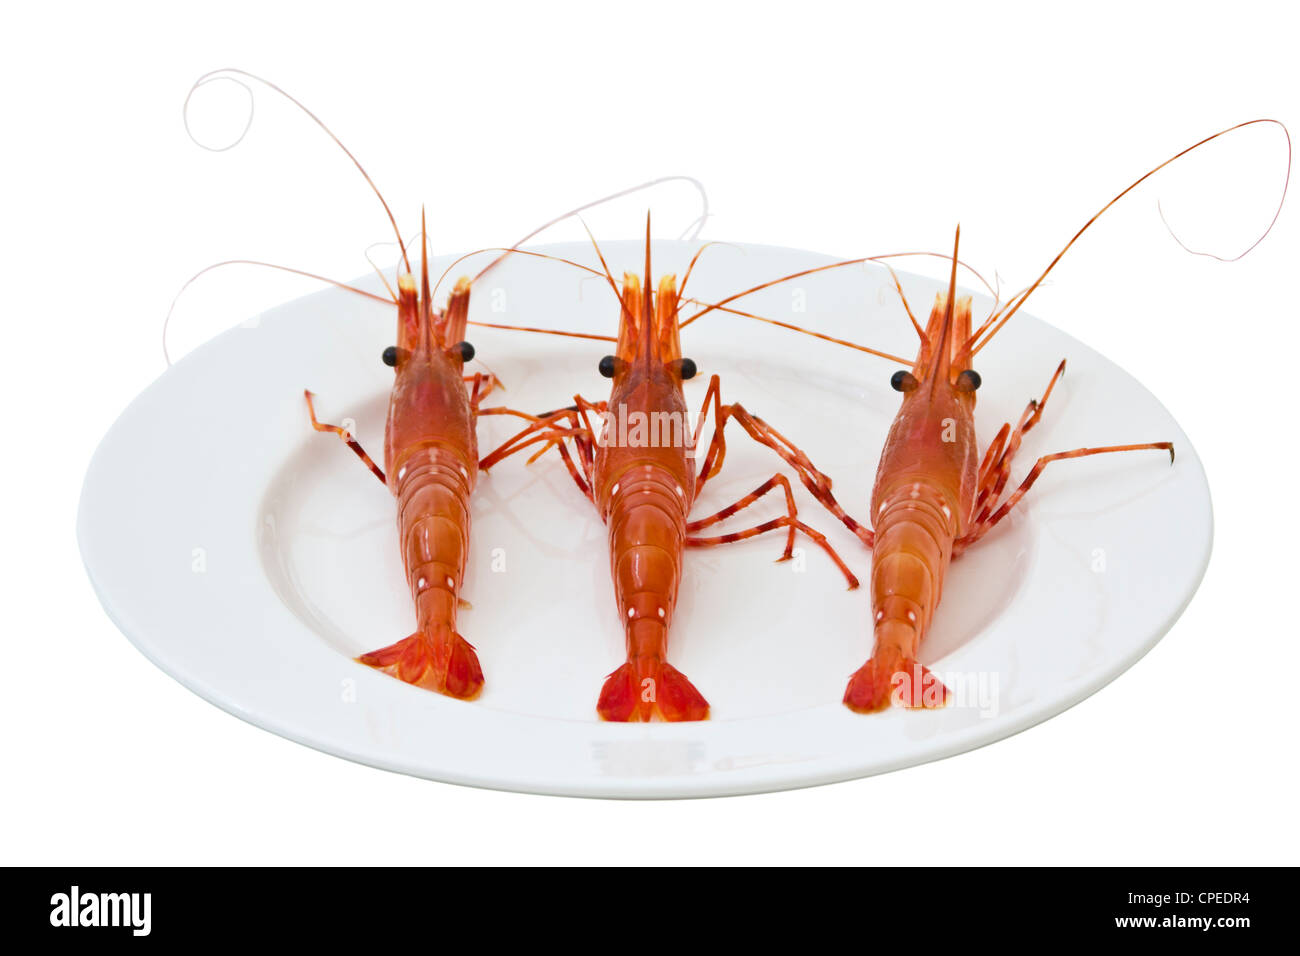 Crevettes fraîches vivre sur une assiette blanche Banque D'Images